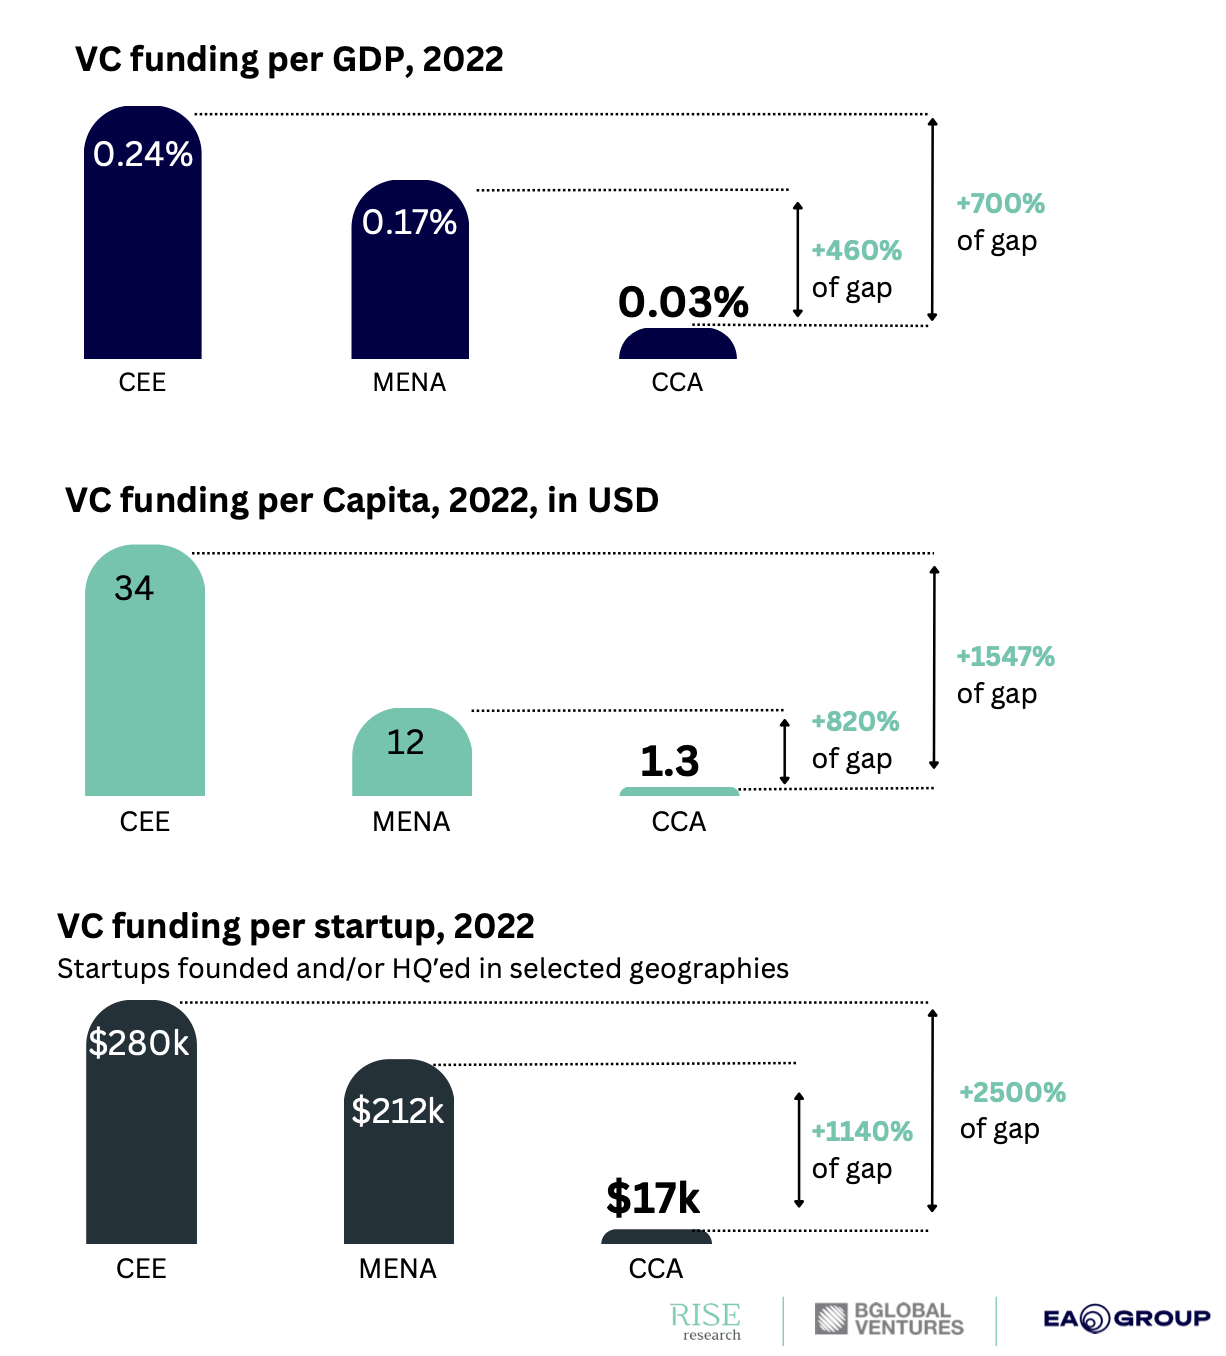 VC funding per GDP, capita and startup in 2022 in CEE, MENA & CCA